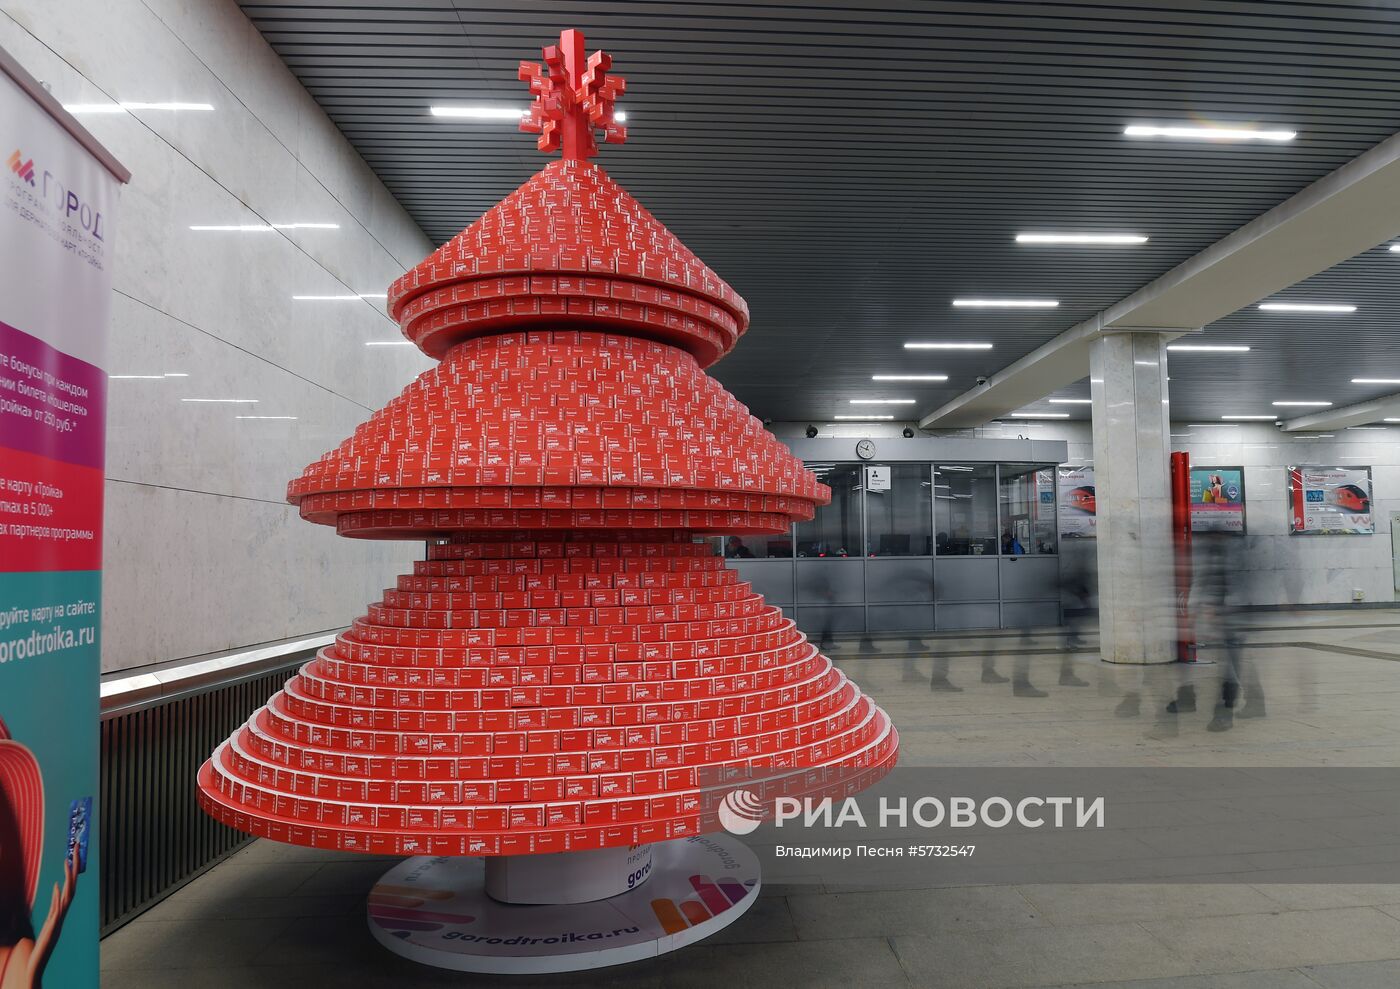 Подготовка к новому году в Московском метрополитене